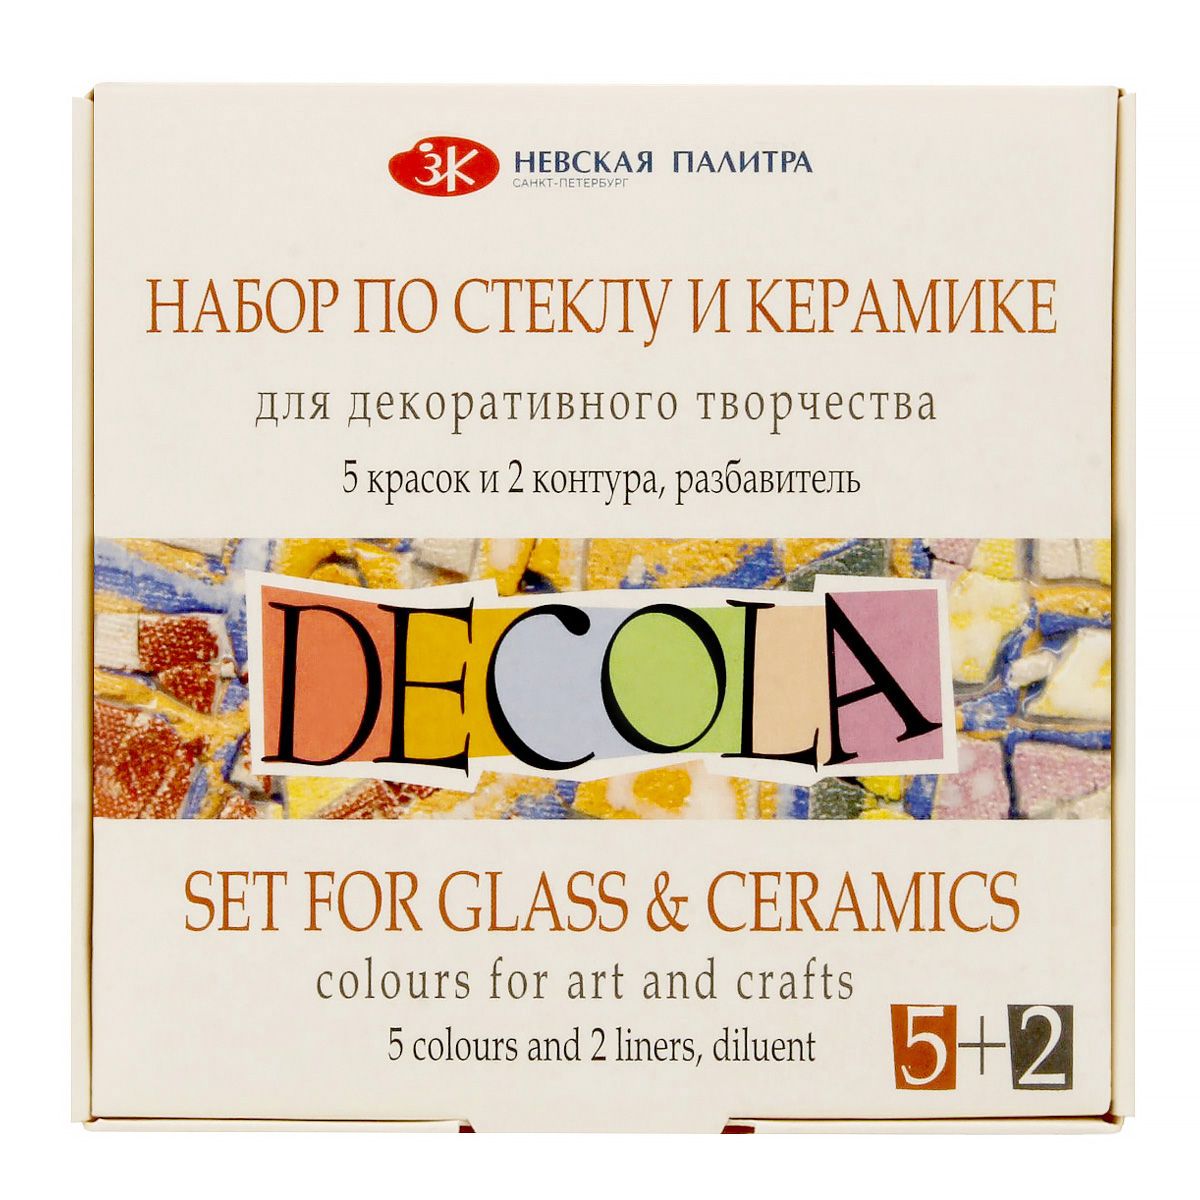 DECOLA набор по стеклу и керамике 5 цв. 20 мл 4041176 плюс два контура и разбавитель Фото 1.